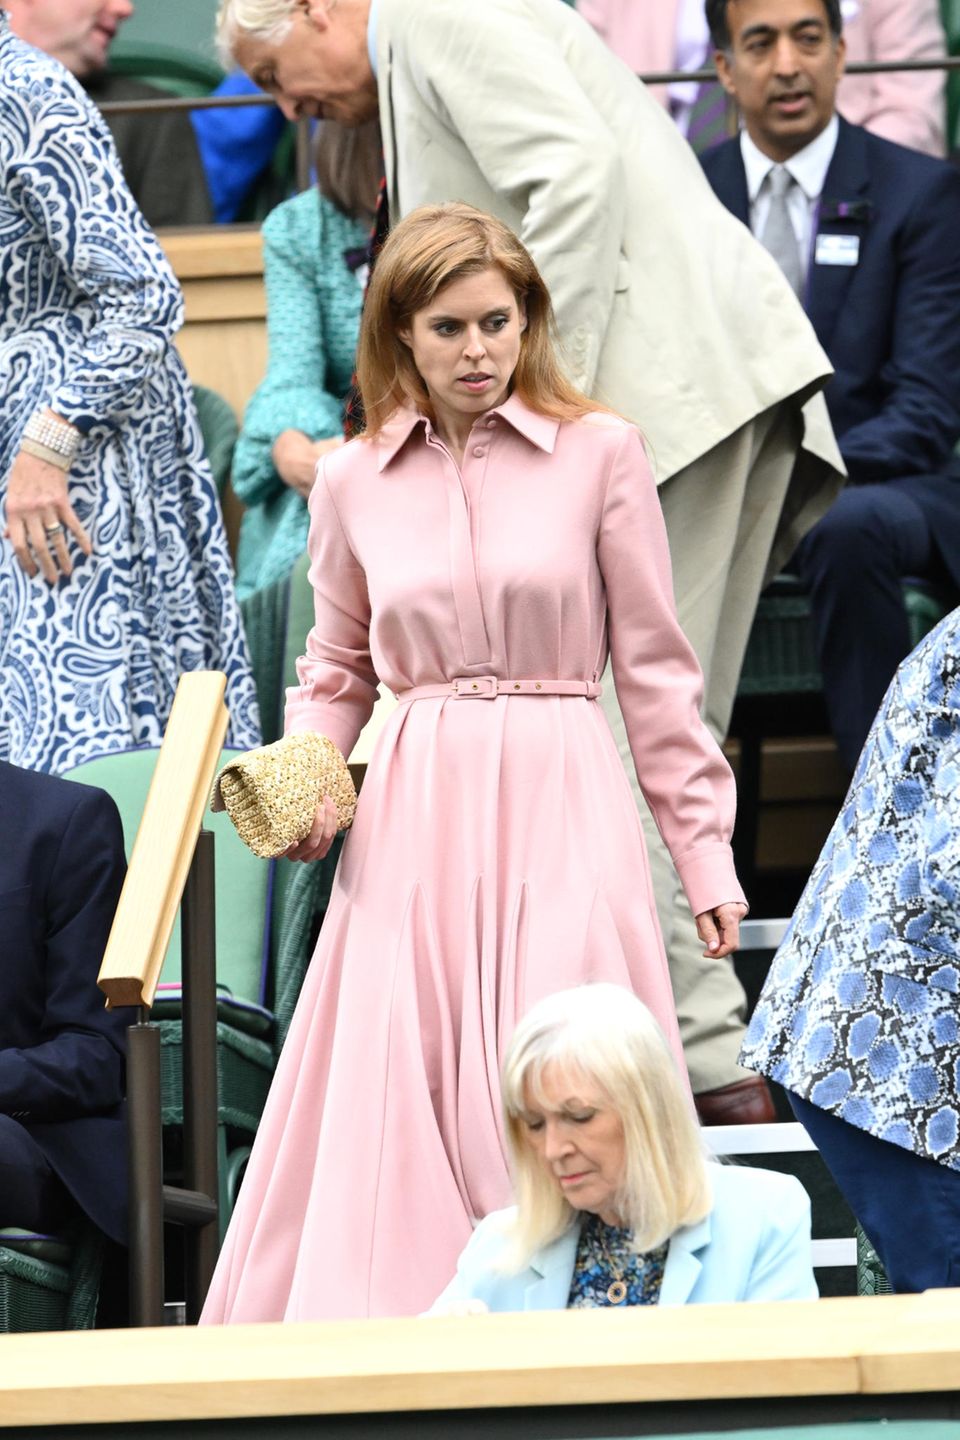 Wie ein zuckersüßes rosa Wölkchen nimmt Prinzessin Beatrice im Marione-Dress von Emilia Wickstead am Halbfinale des Damen-Doppel in Wimbledon teil. Zum 1.300-Euro-Kleid kombiniert die 34-Jährige eine Clutch aus Bast. Wenig später wird auch die Stimmung der Prinzessin dem Outfit entsprechend: Als Beatrice in den Royal Box auf Ehemann Edoardo Mapelli Mozzi trifft, stiehlt sich sogar ein Lächeln auf die Lippen der Prinzessin.